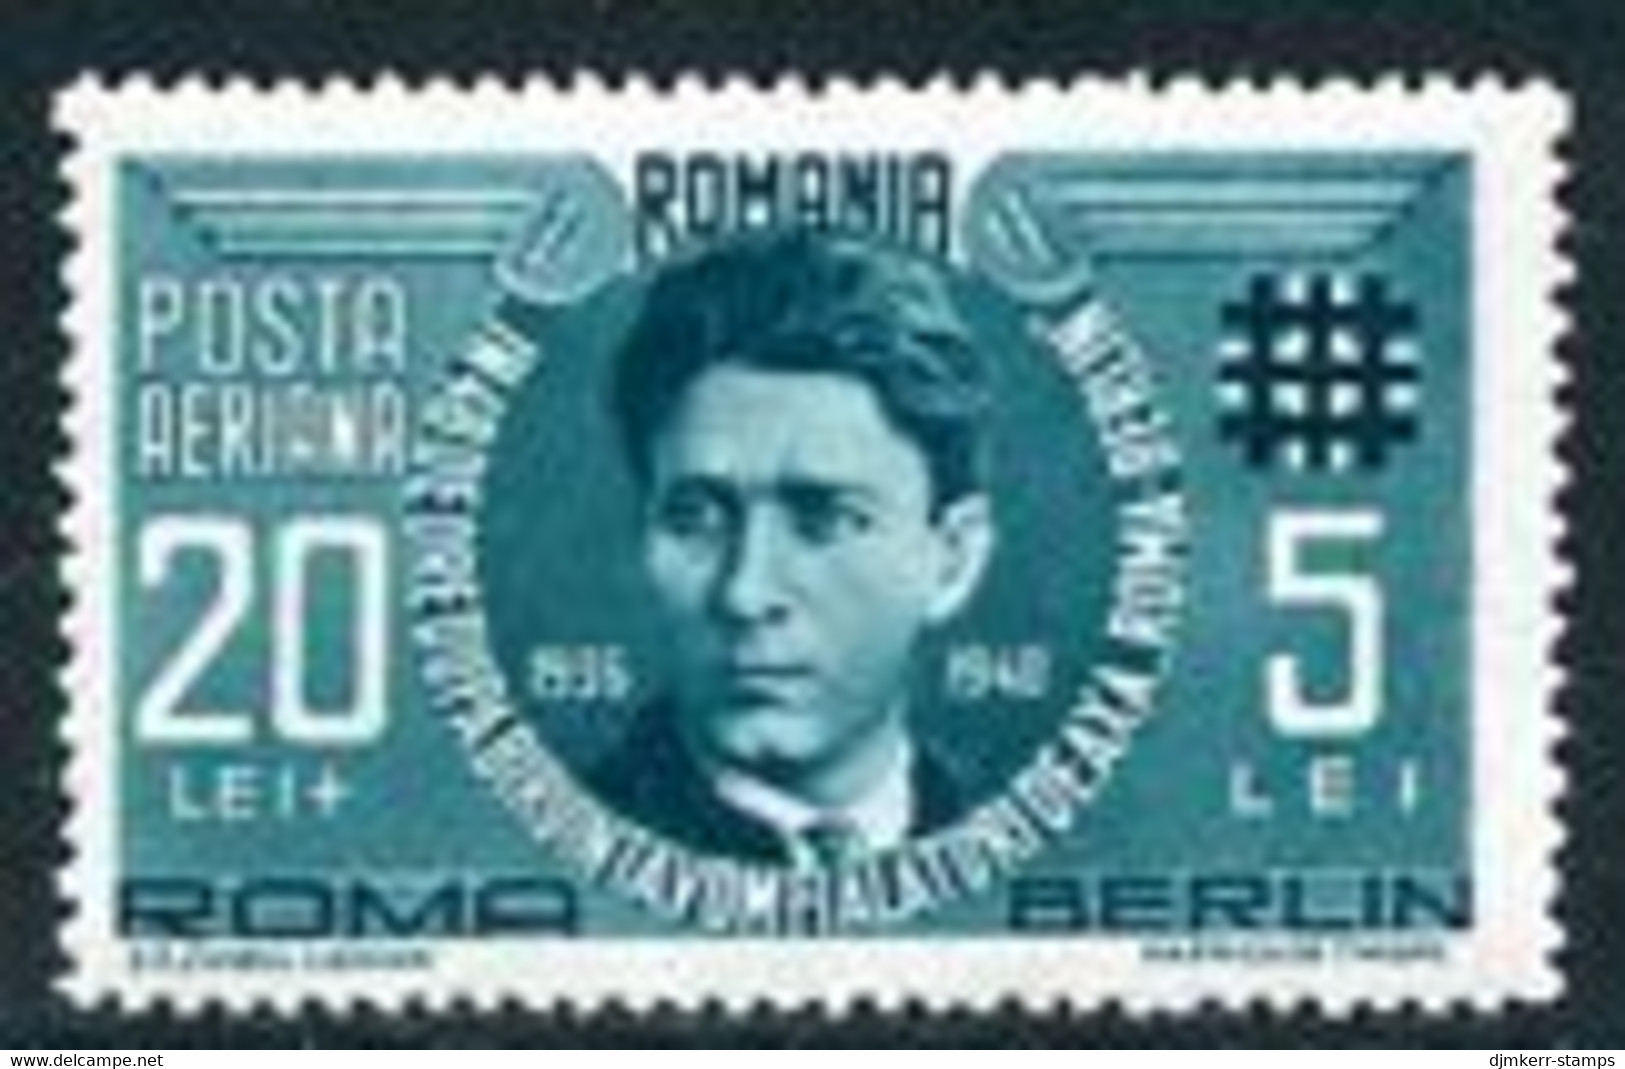 ROMANIA 1940 Codreanu Anniversary Airmail  MNH / **  Michel 681 - Nuovi